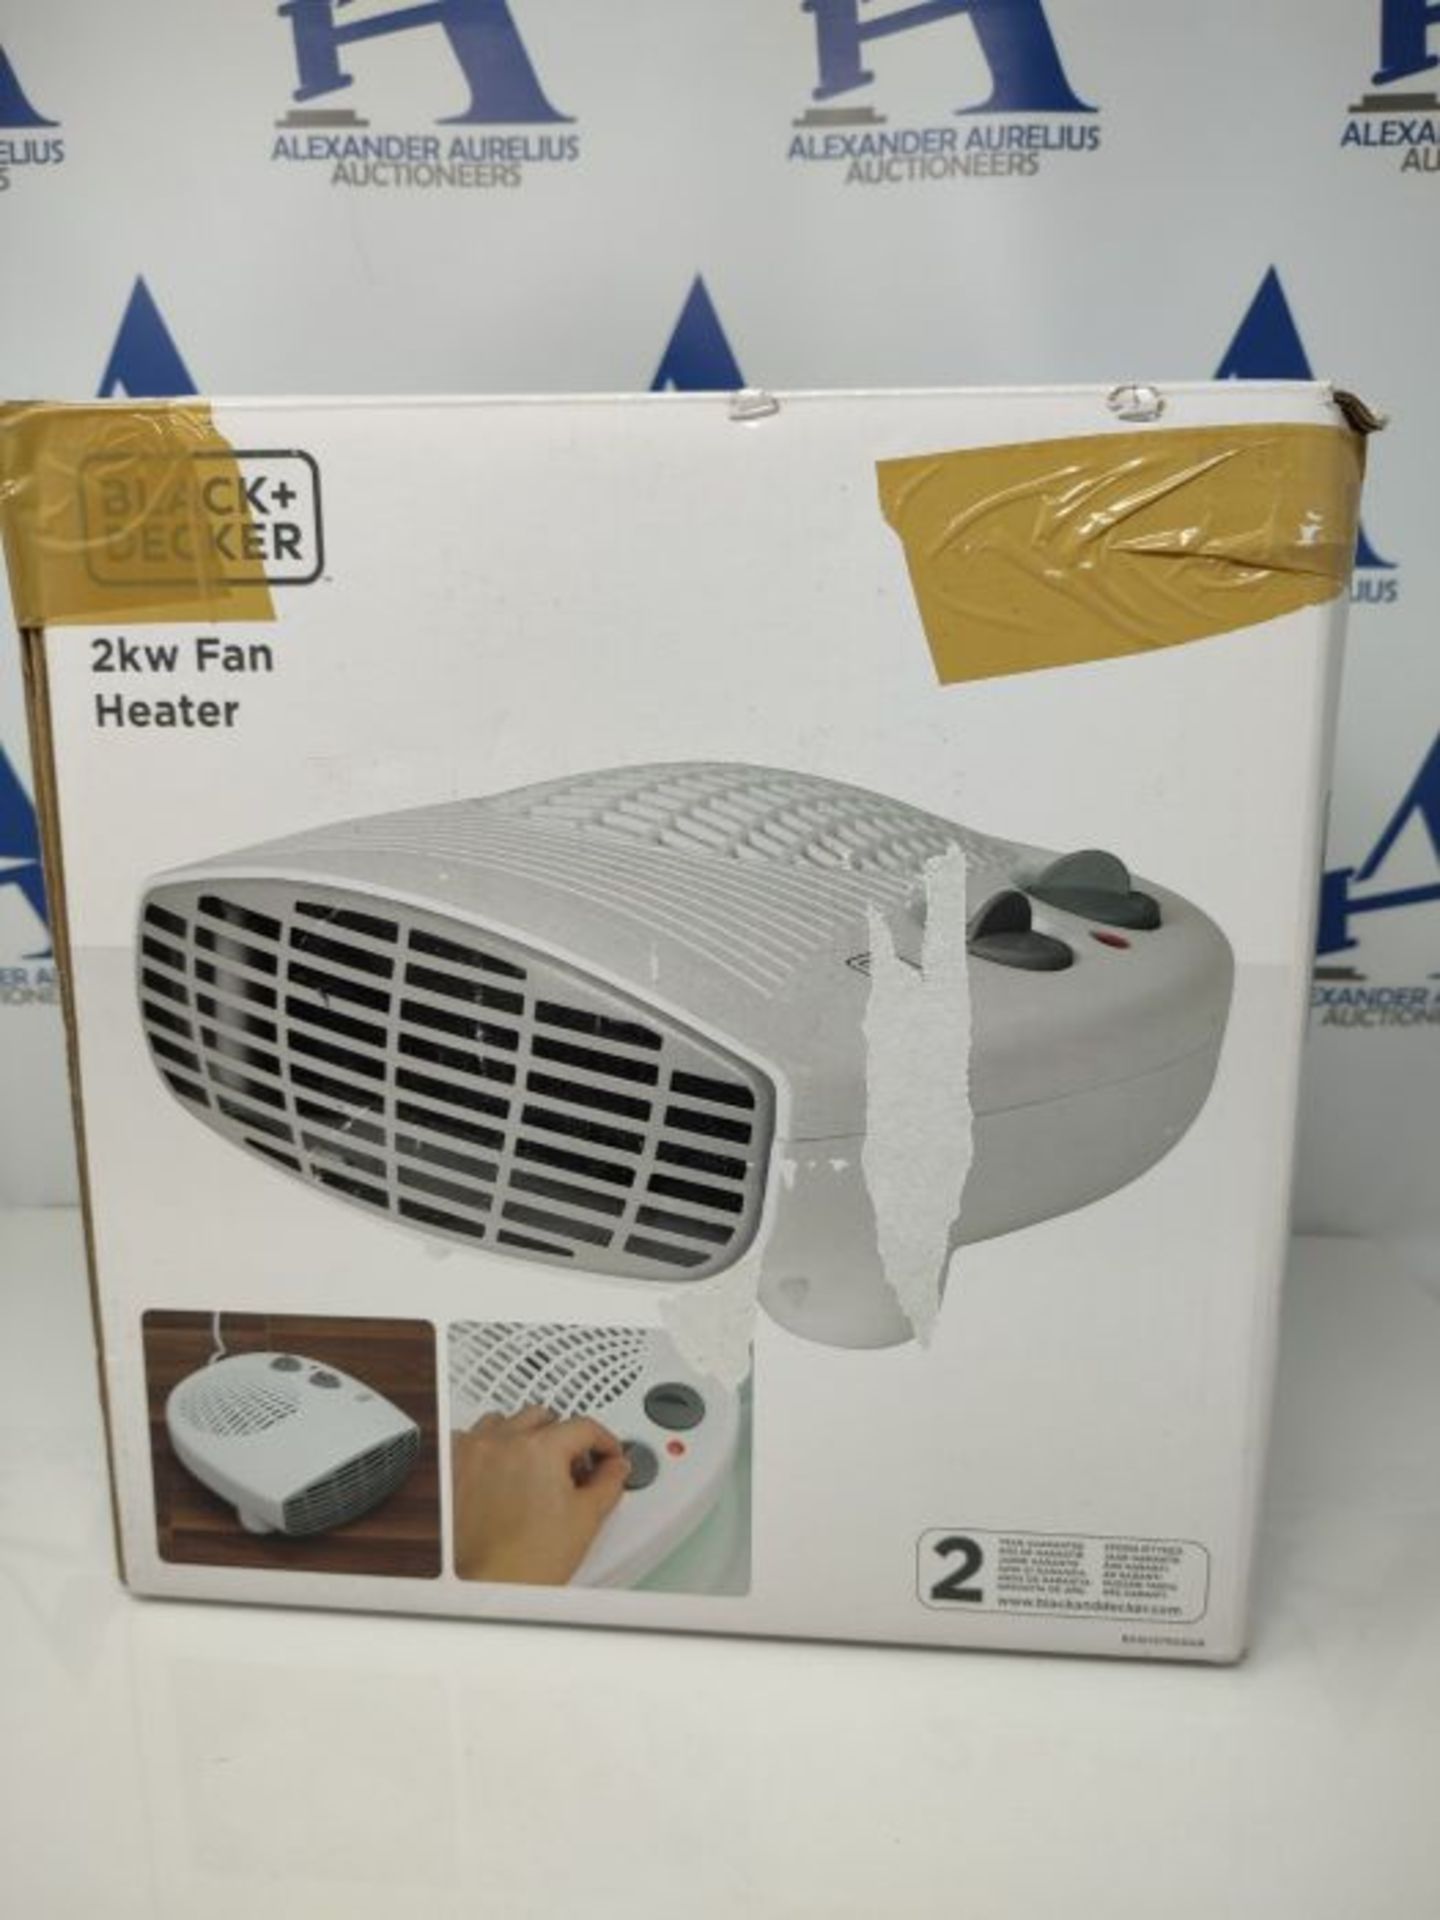 BLACK+DECKER BXSH37005GB Fan Heater, 2 Heat Settings, 1 Fan Setting, Adjustable Thermo - Image 2 of 3